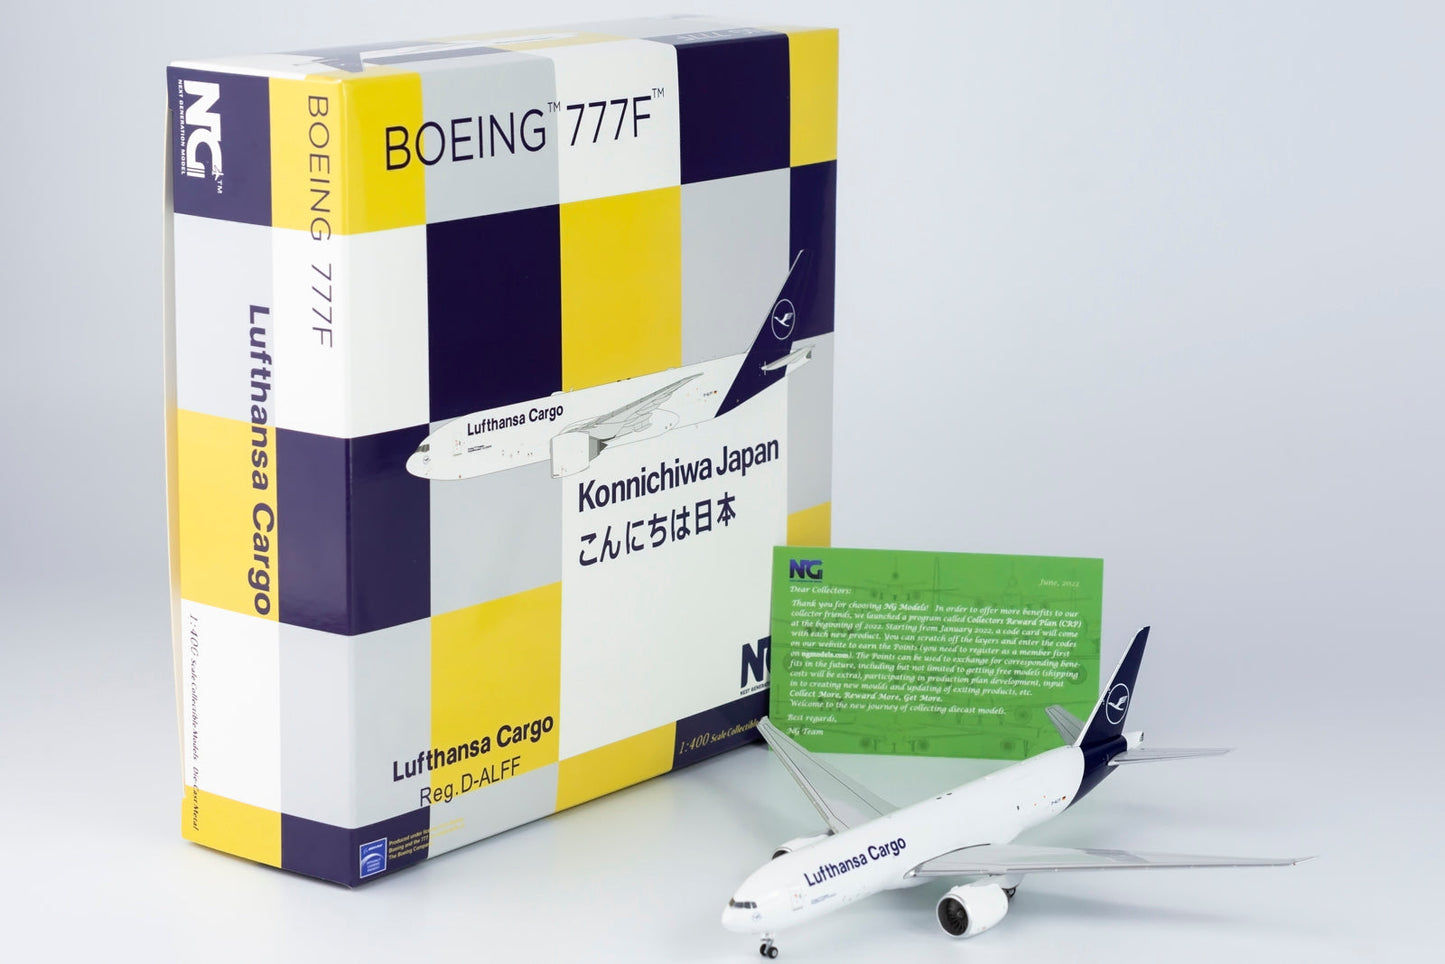 1/400 Lufthansa Cargo B 777F NG Models 72003